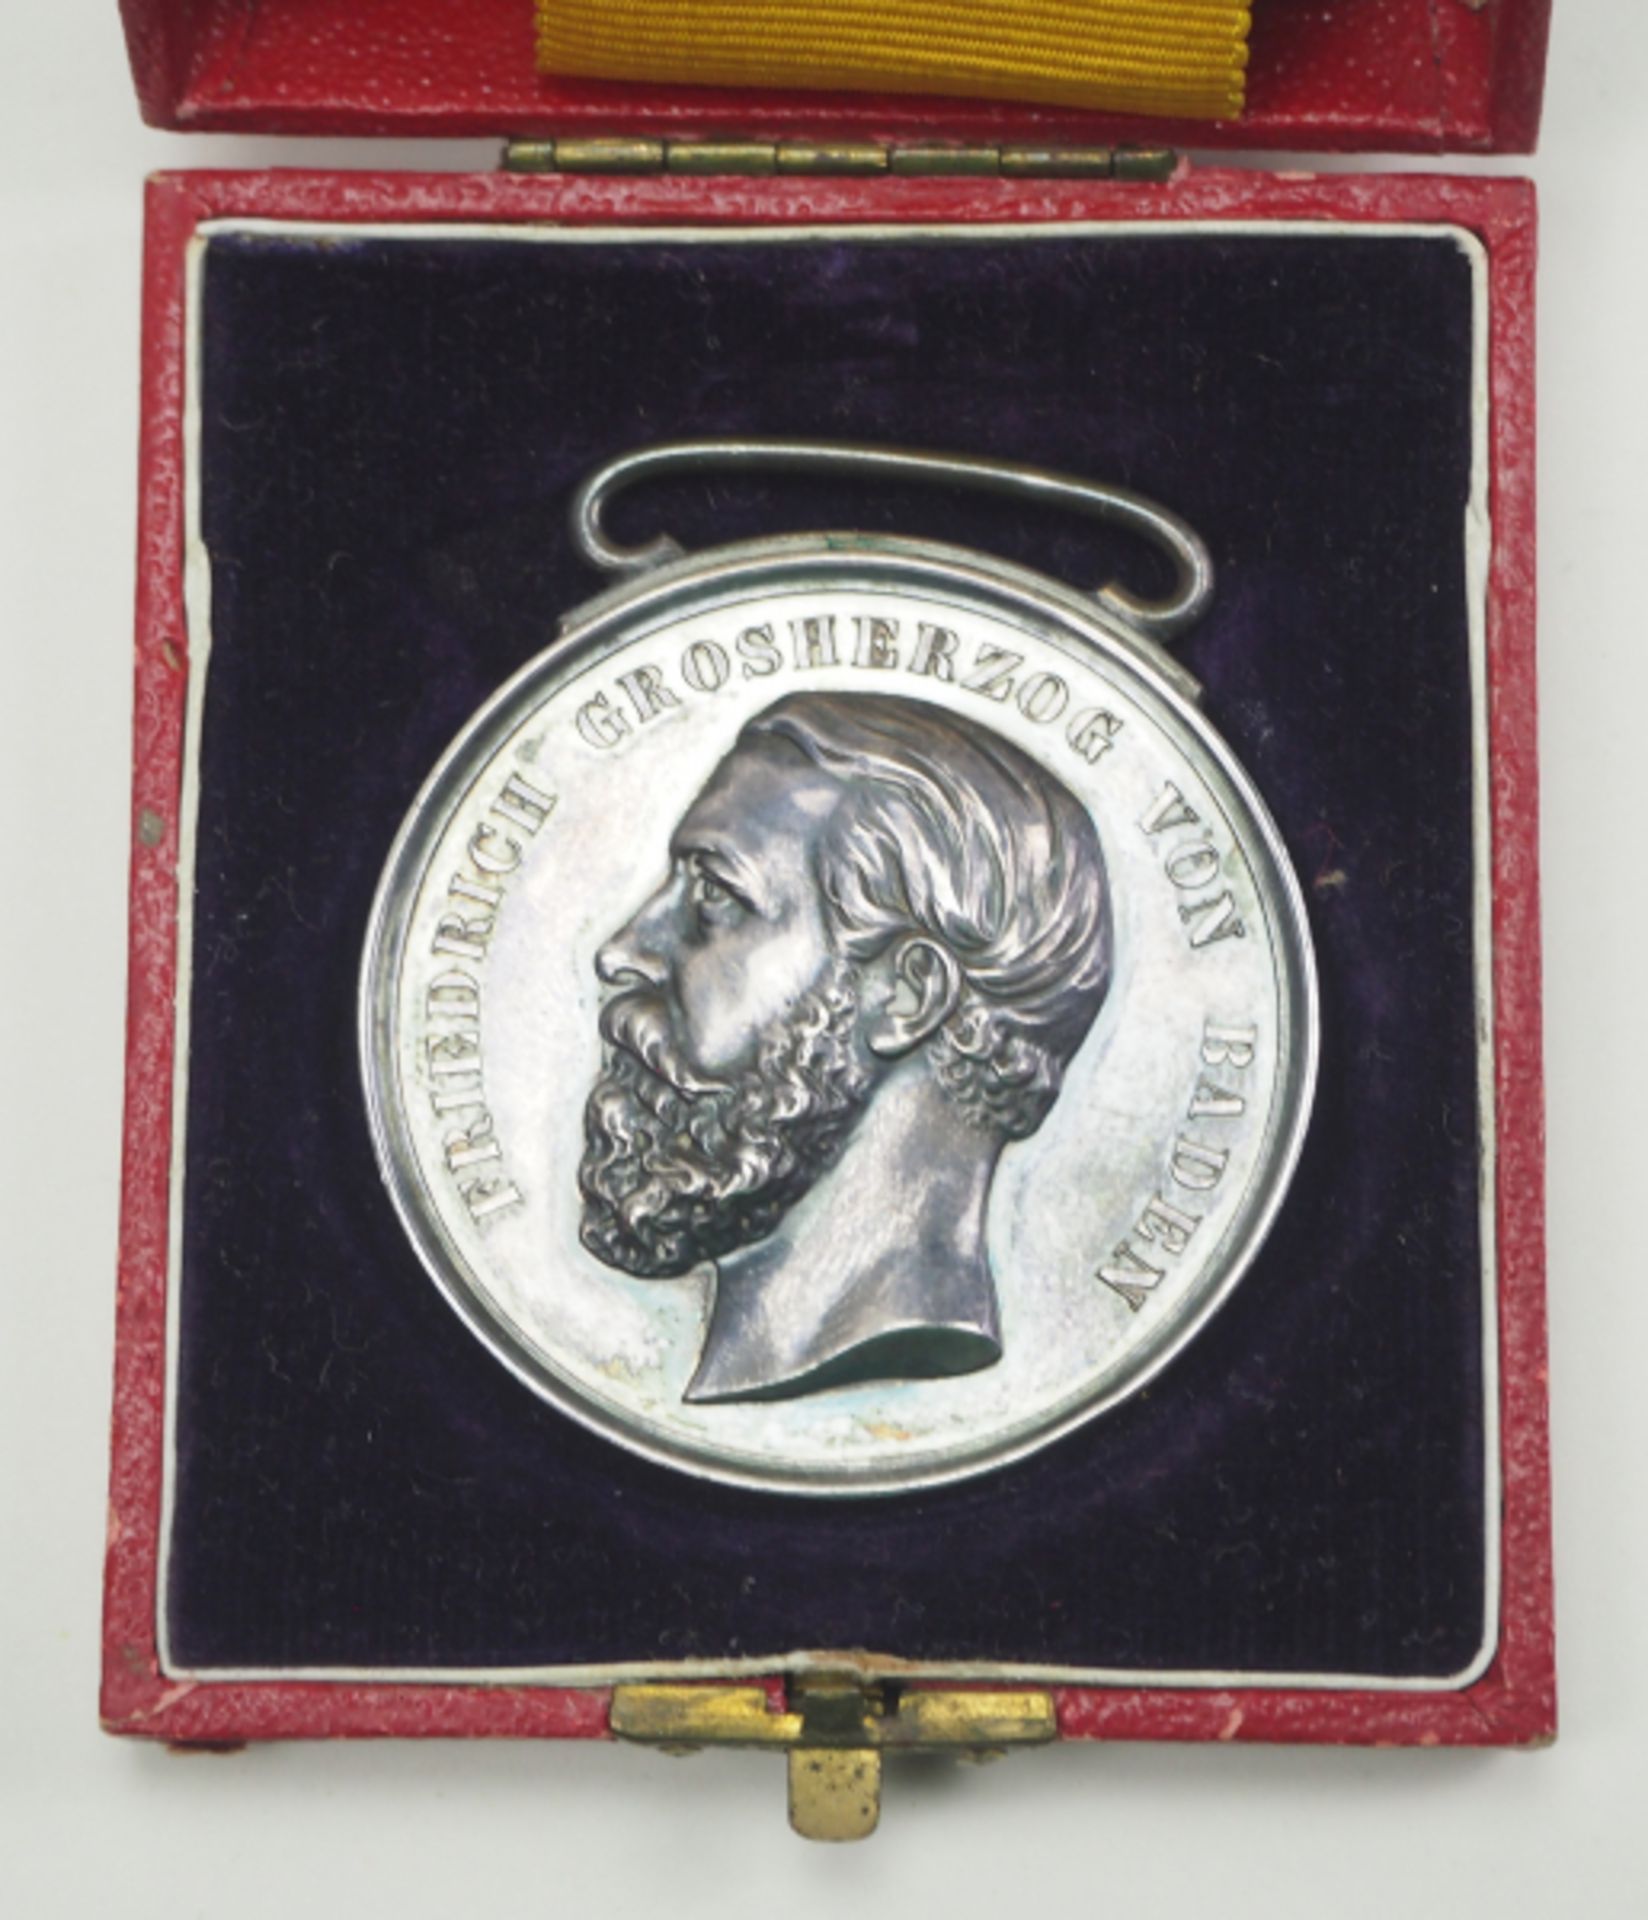 Baden: Silberne Verdienstmedaille, Großherzog Friedrich, im Etui.Silber, im roten Verleihungsetui - Bild 2 aus 4